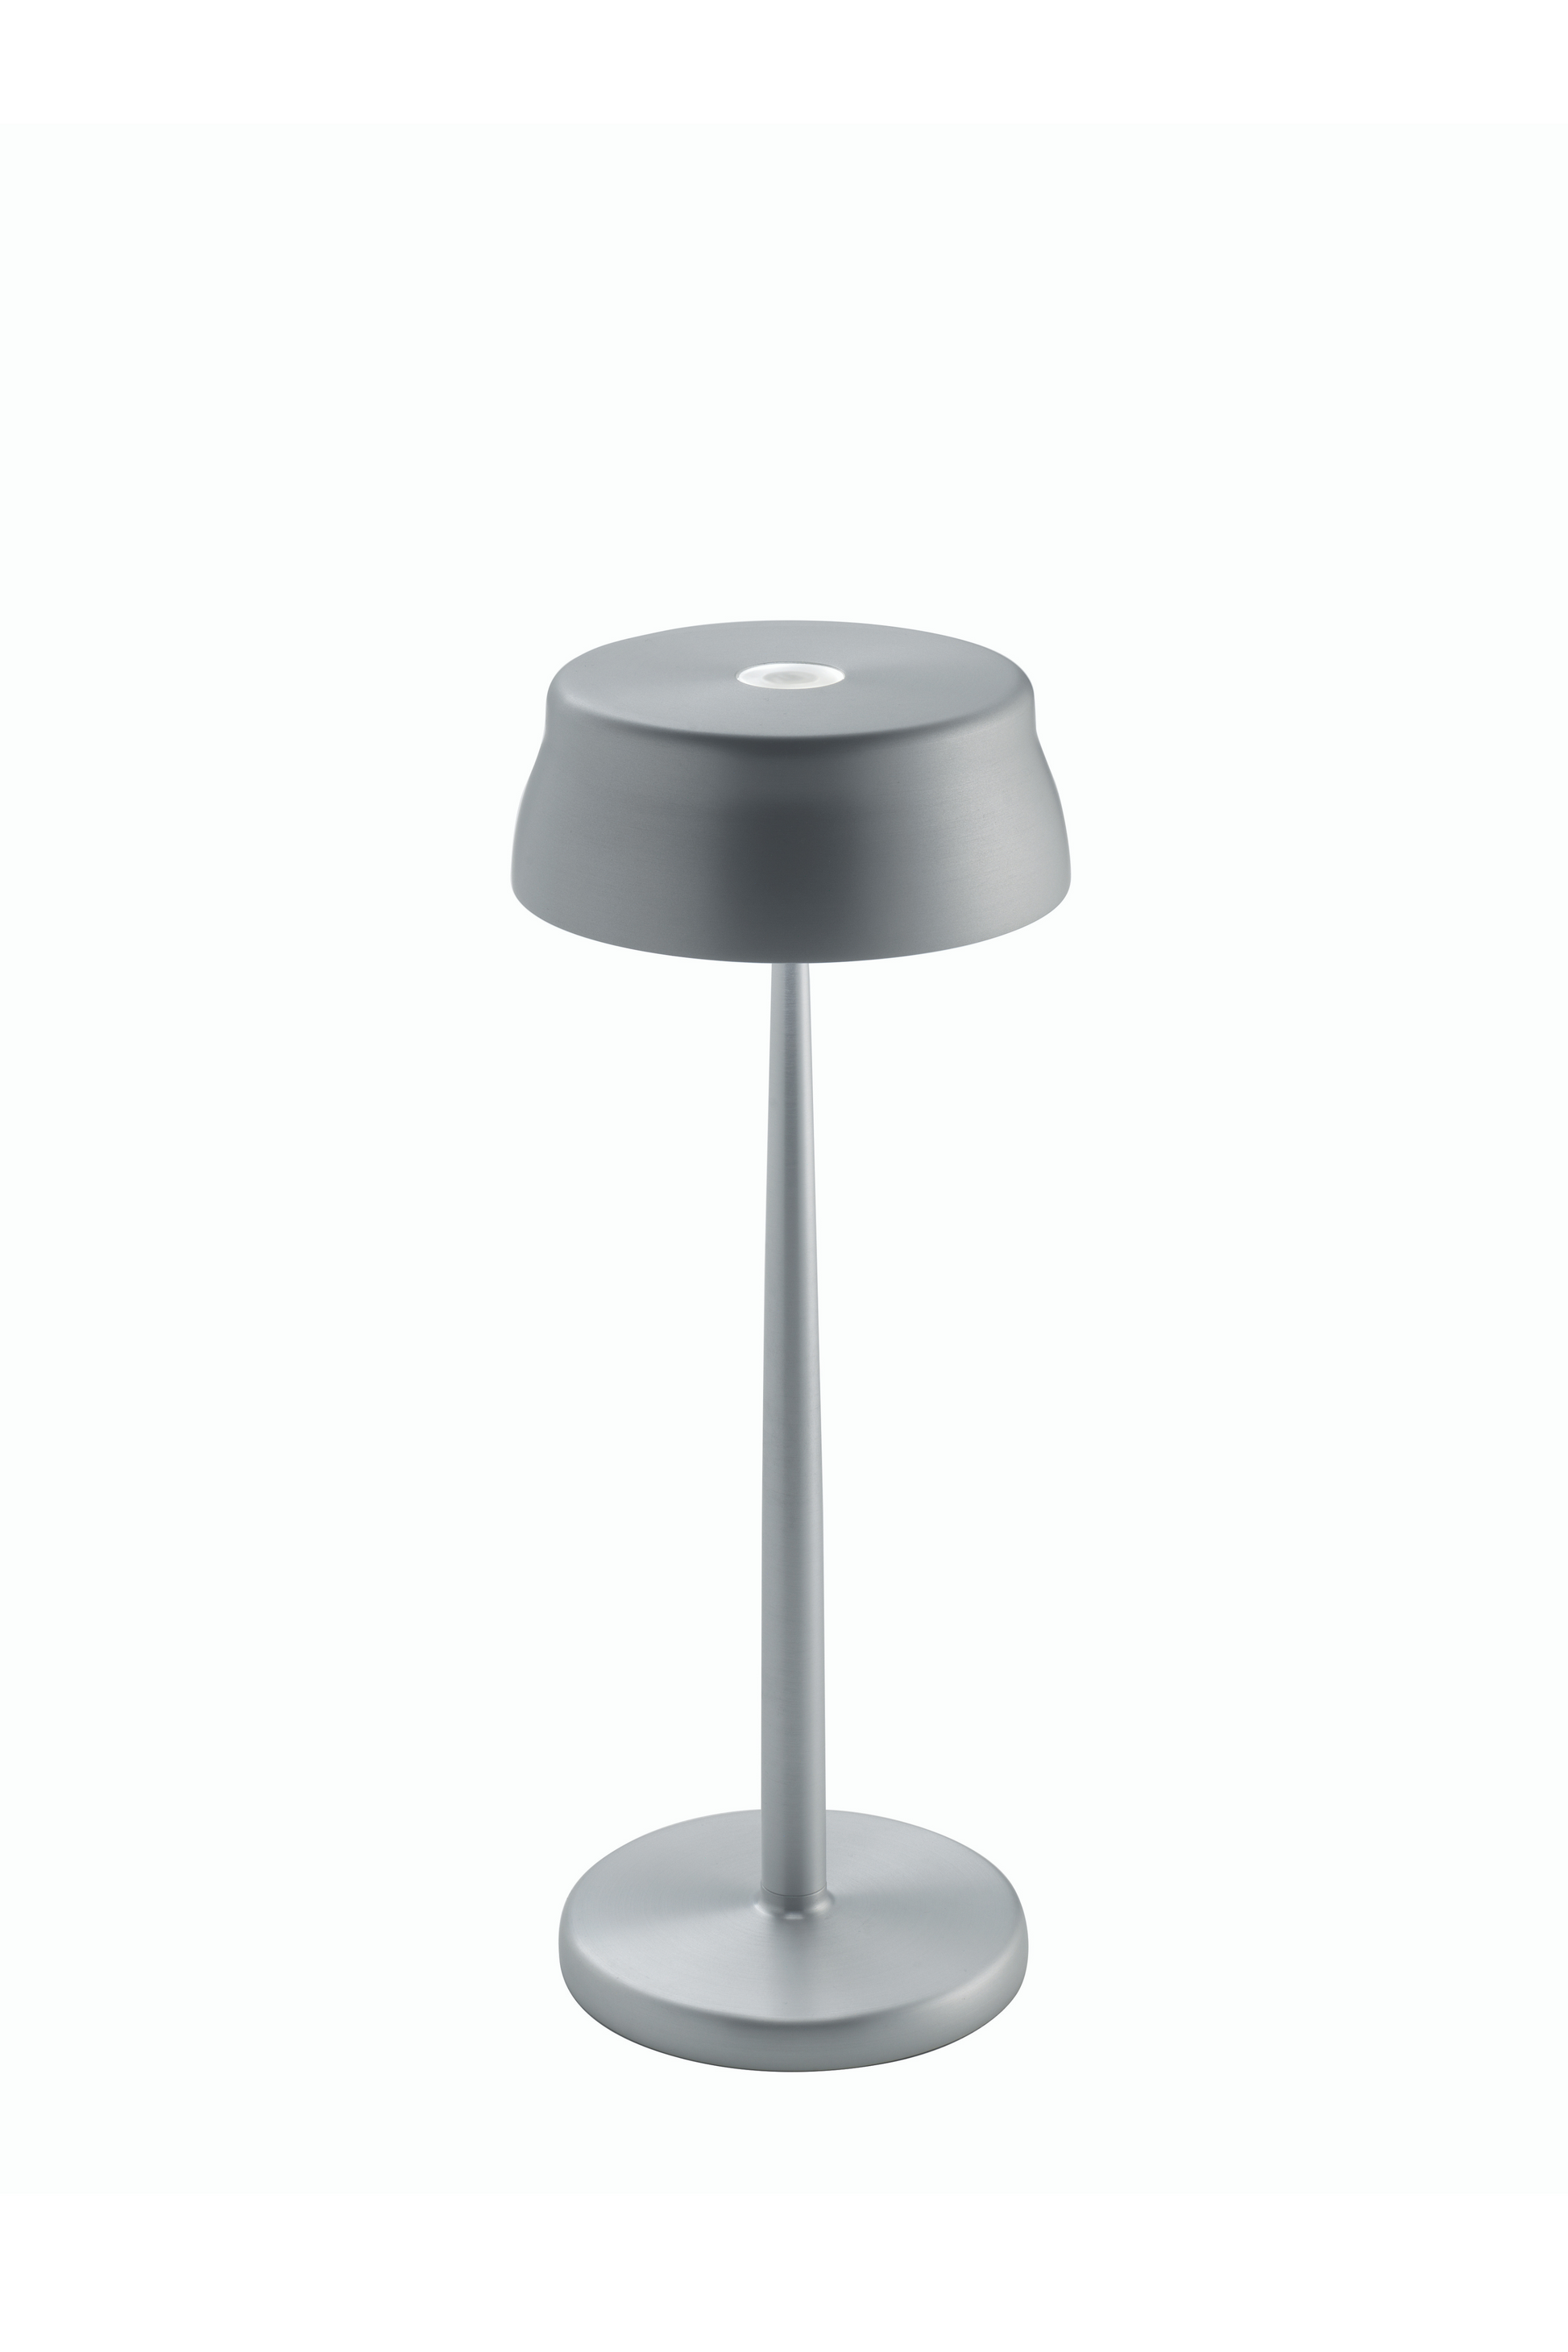 Sister Light Table Lamp [PRE-ORDER] - Fipe